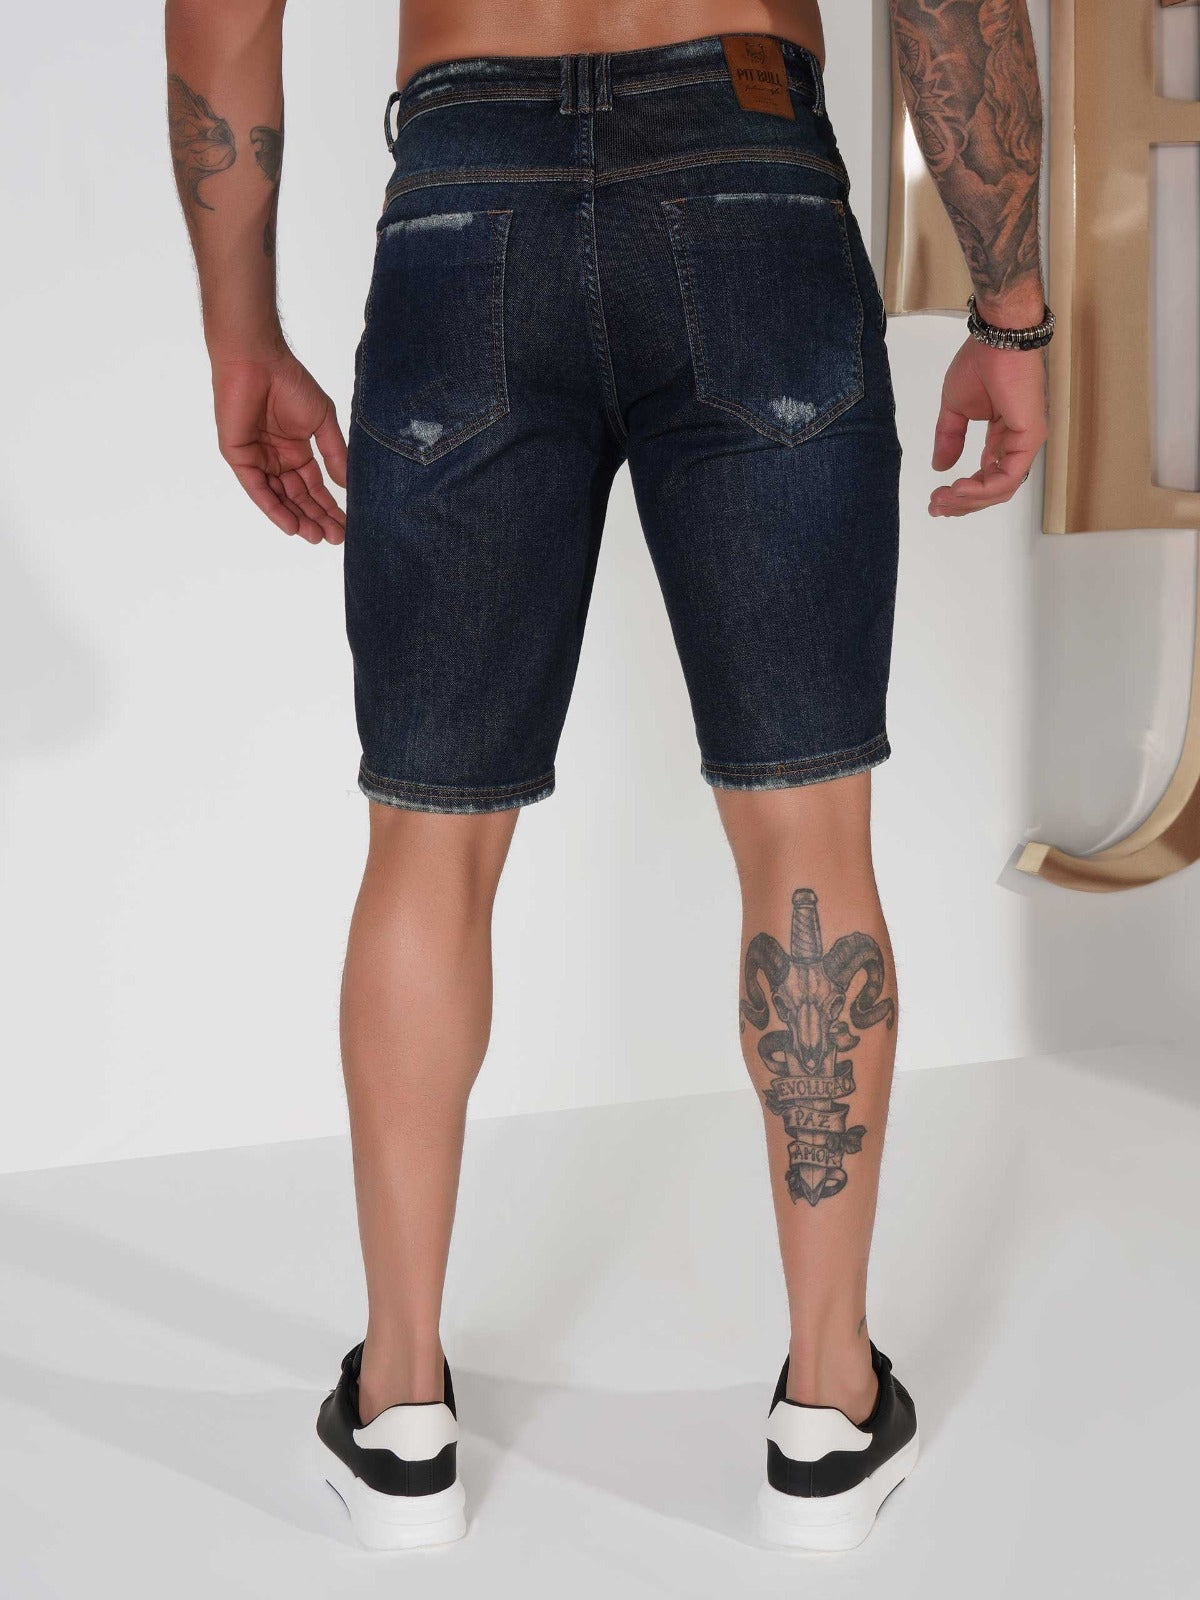 Pit Bull Jeans Pantalones cortos vaqueros para hombre 79950